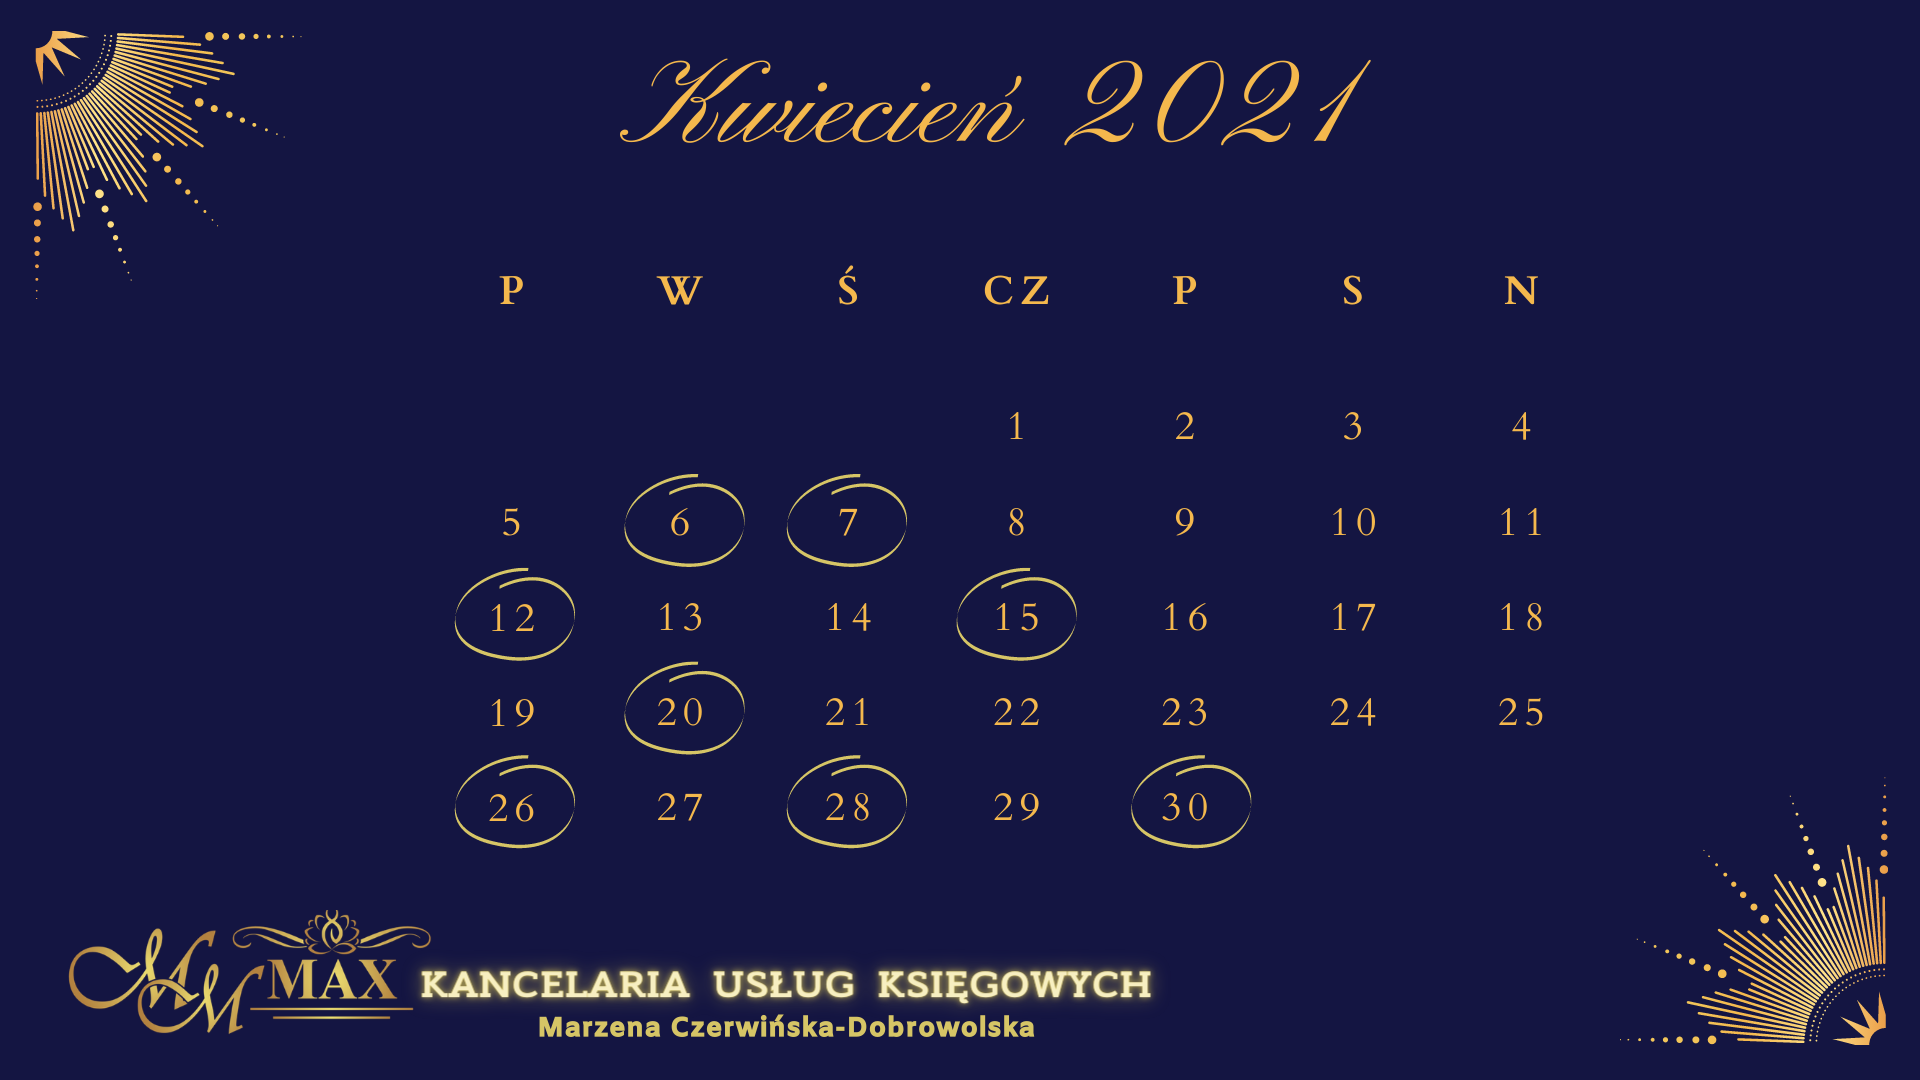 Kalendarz podatkowo-rachunkowy Kwiecień 2021